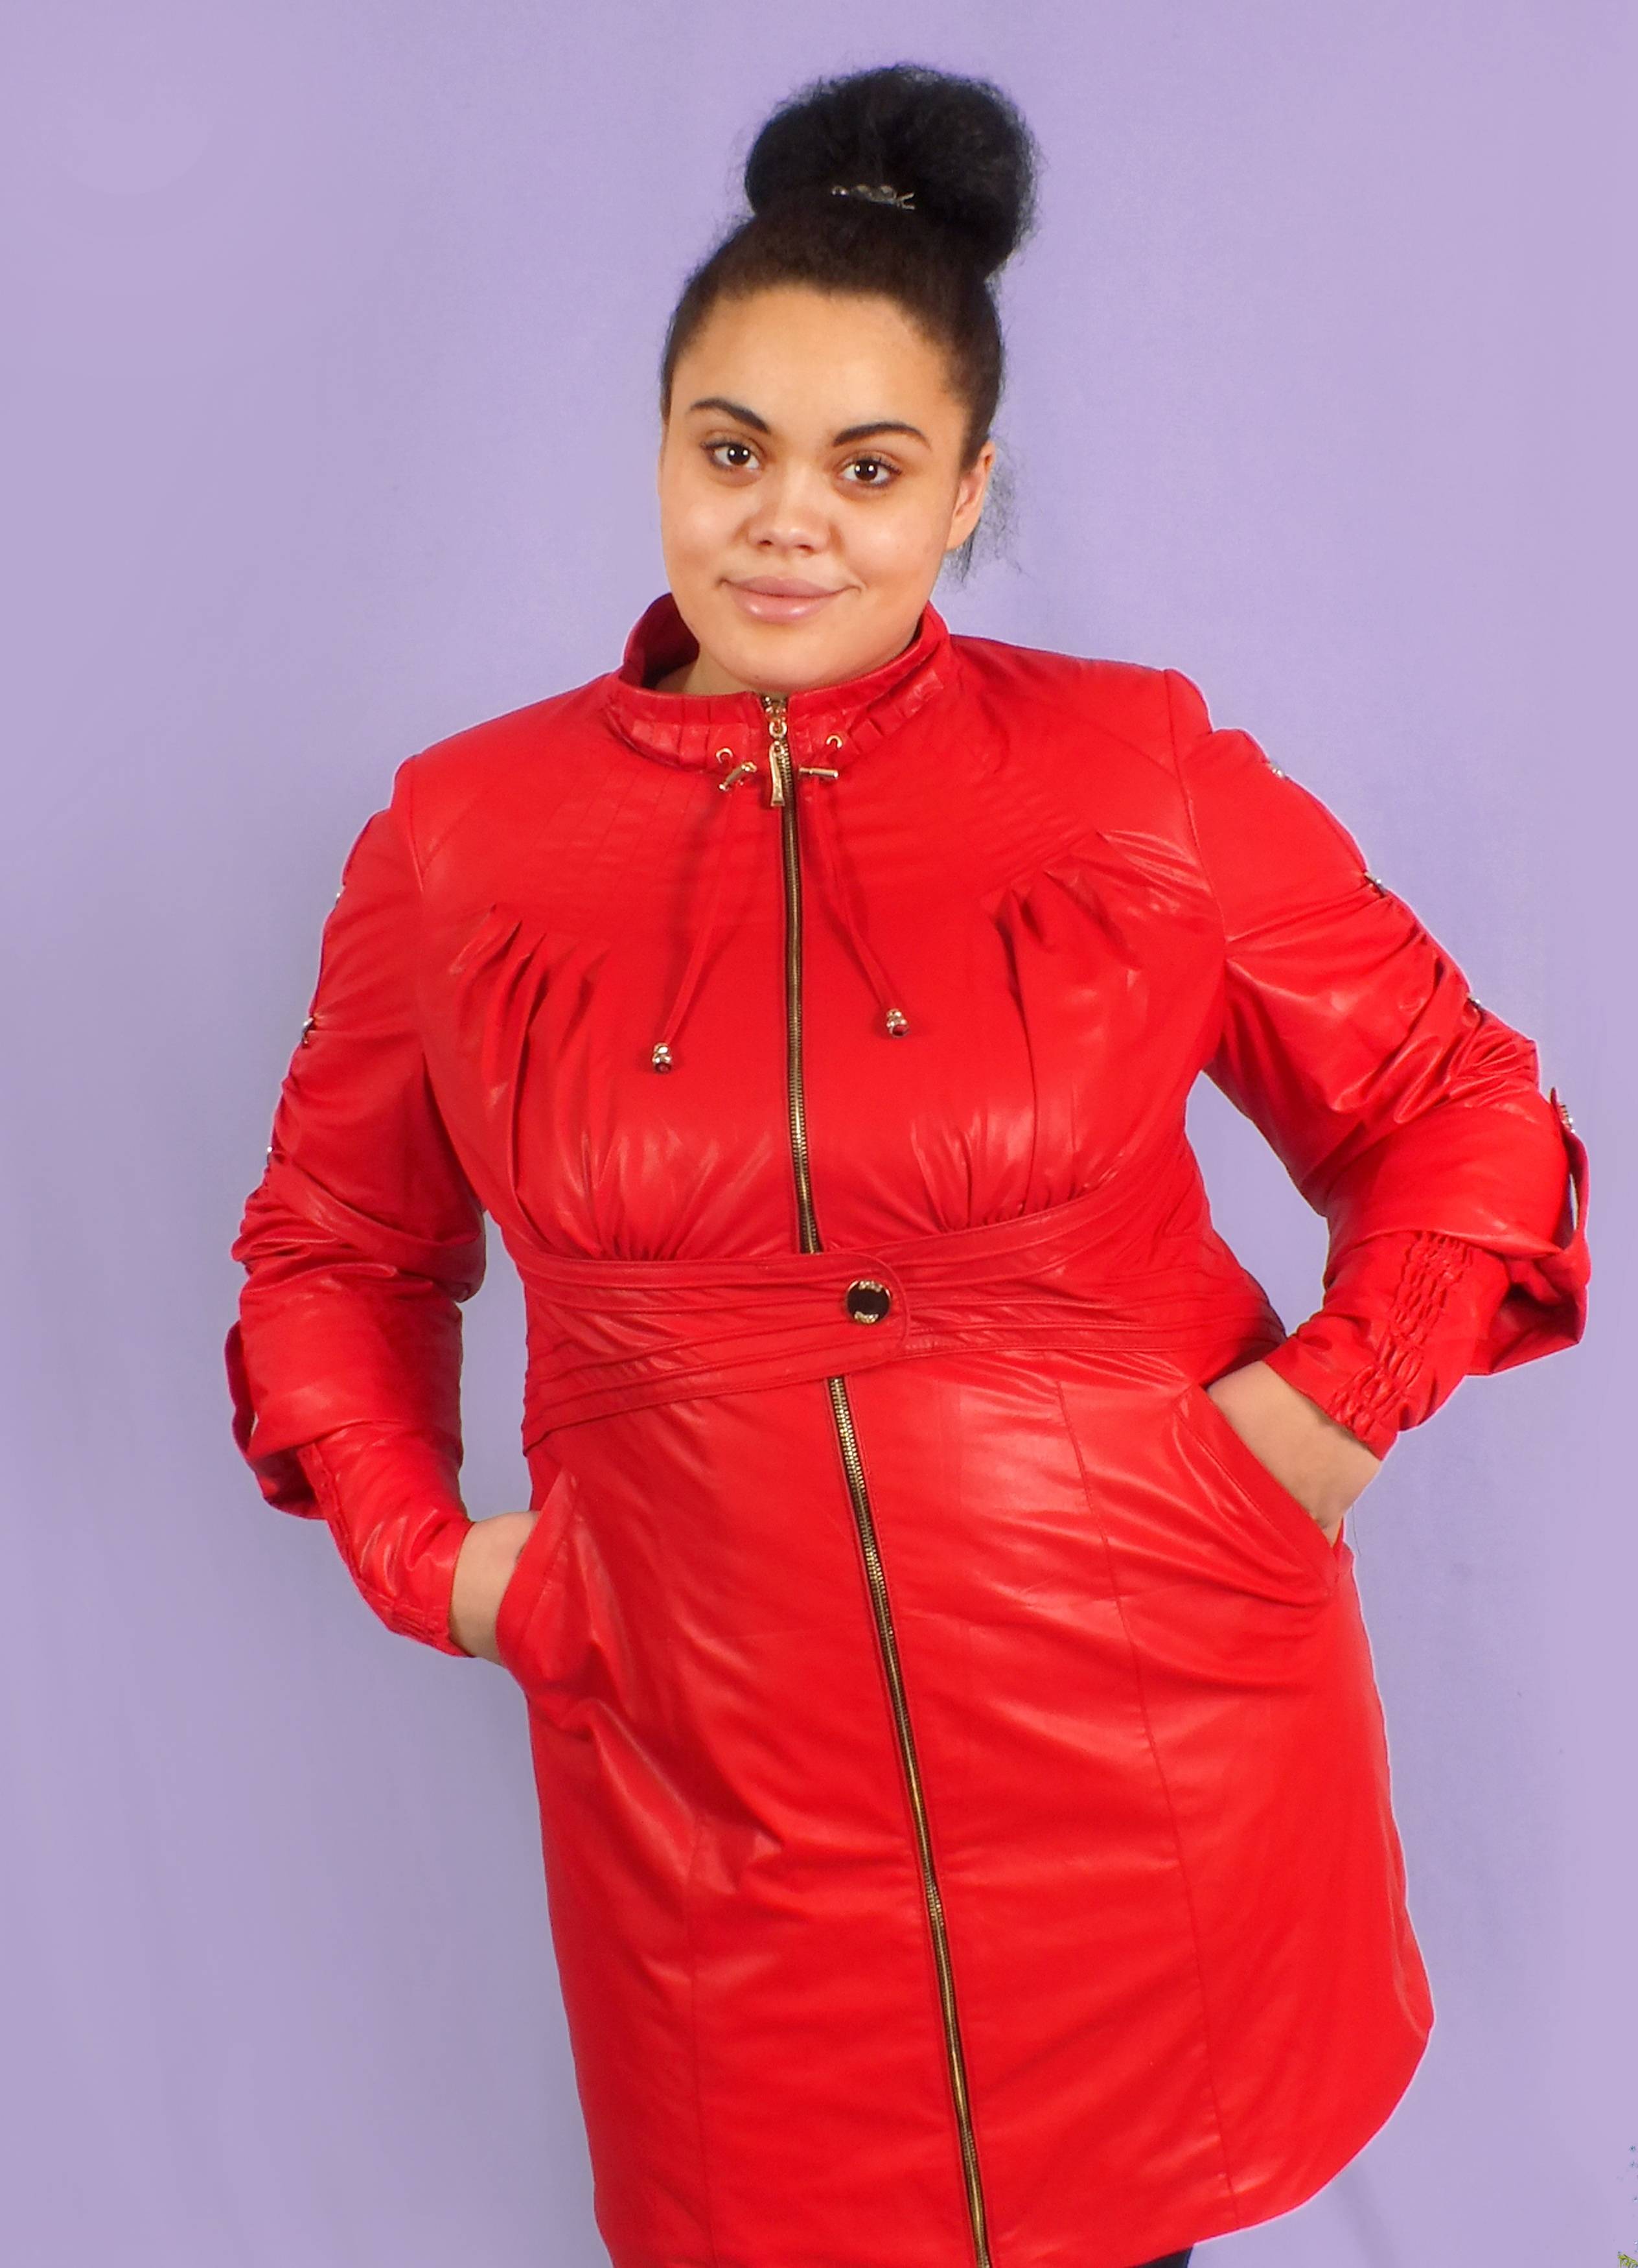 Верхняя зимняя одежда для полных женщин — руководство по выбору фасонов и брендов